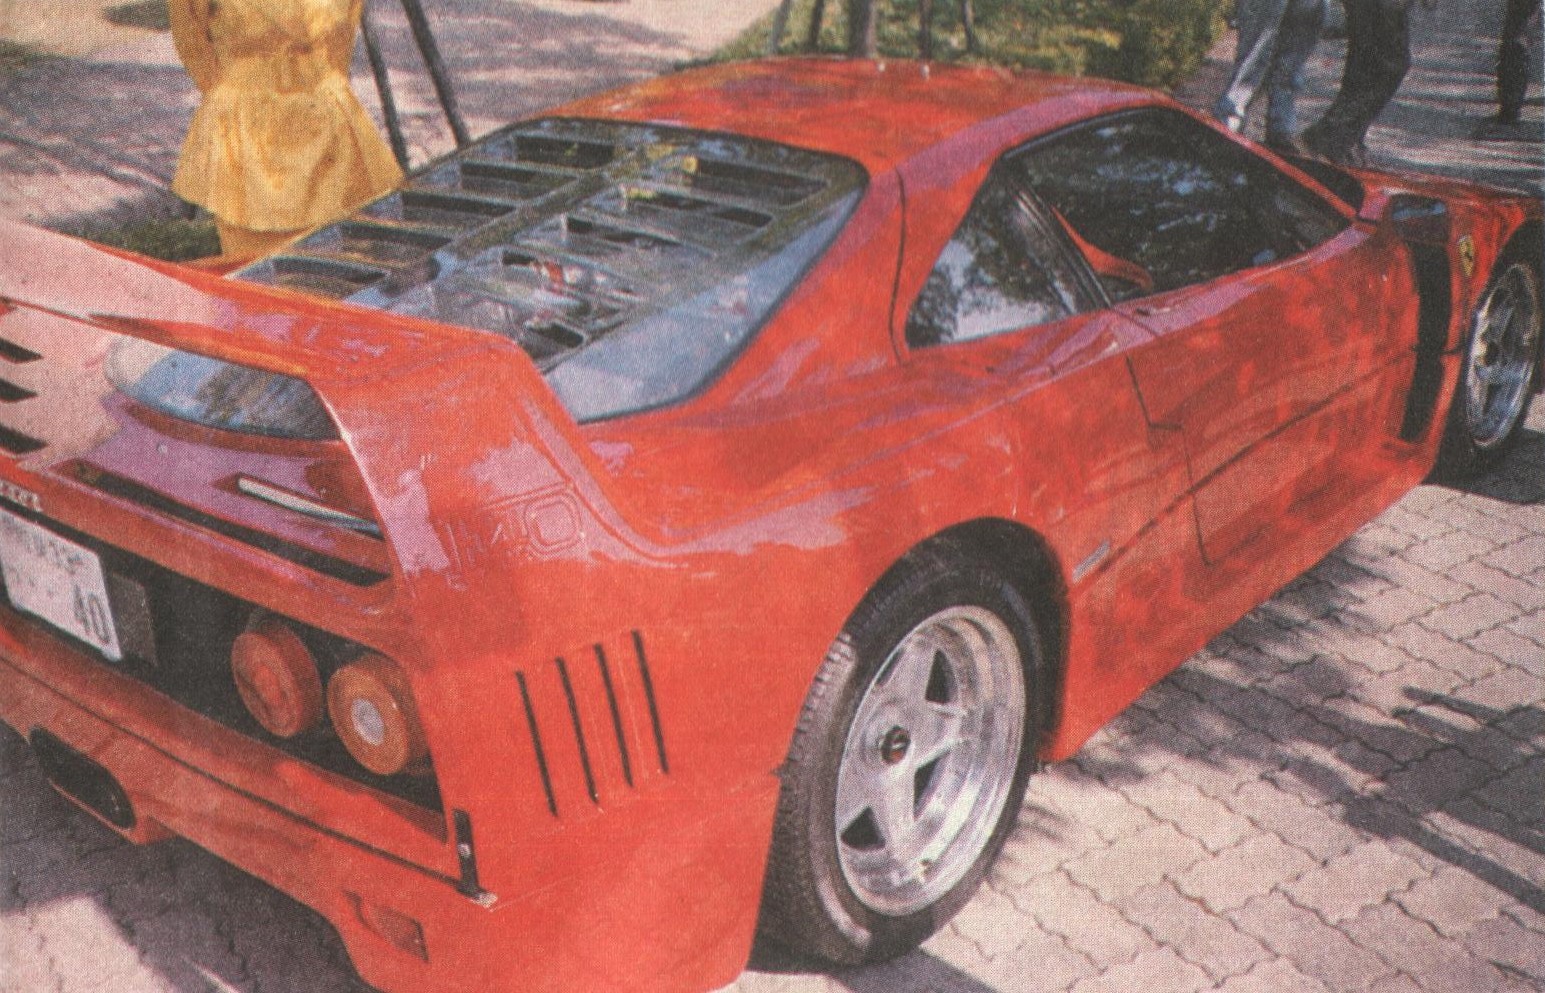 Ferrari F40 Rear View.jpg